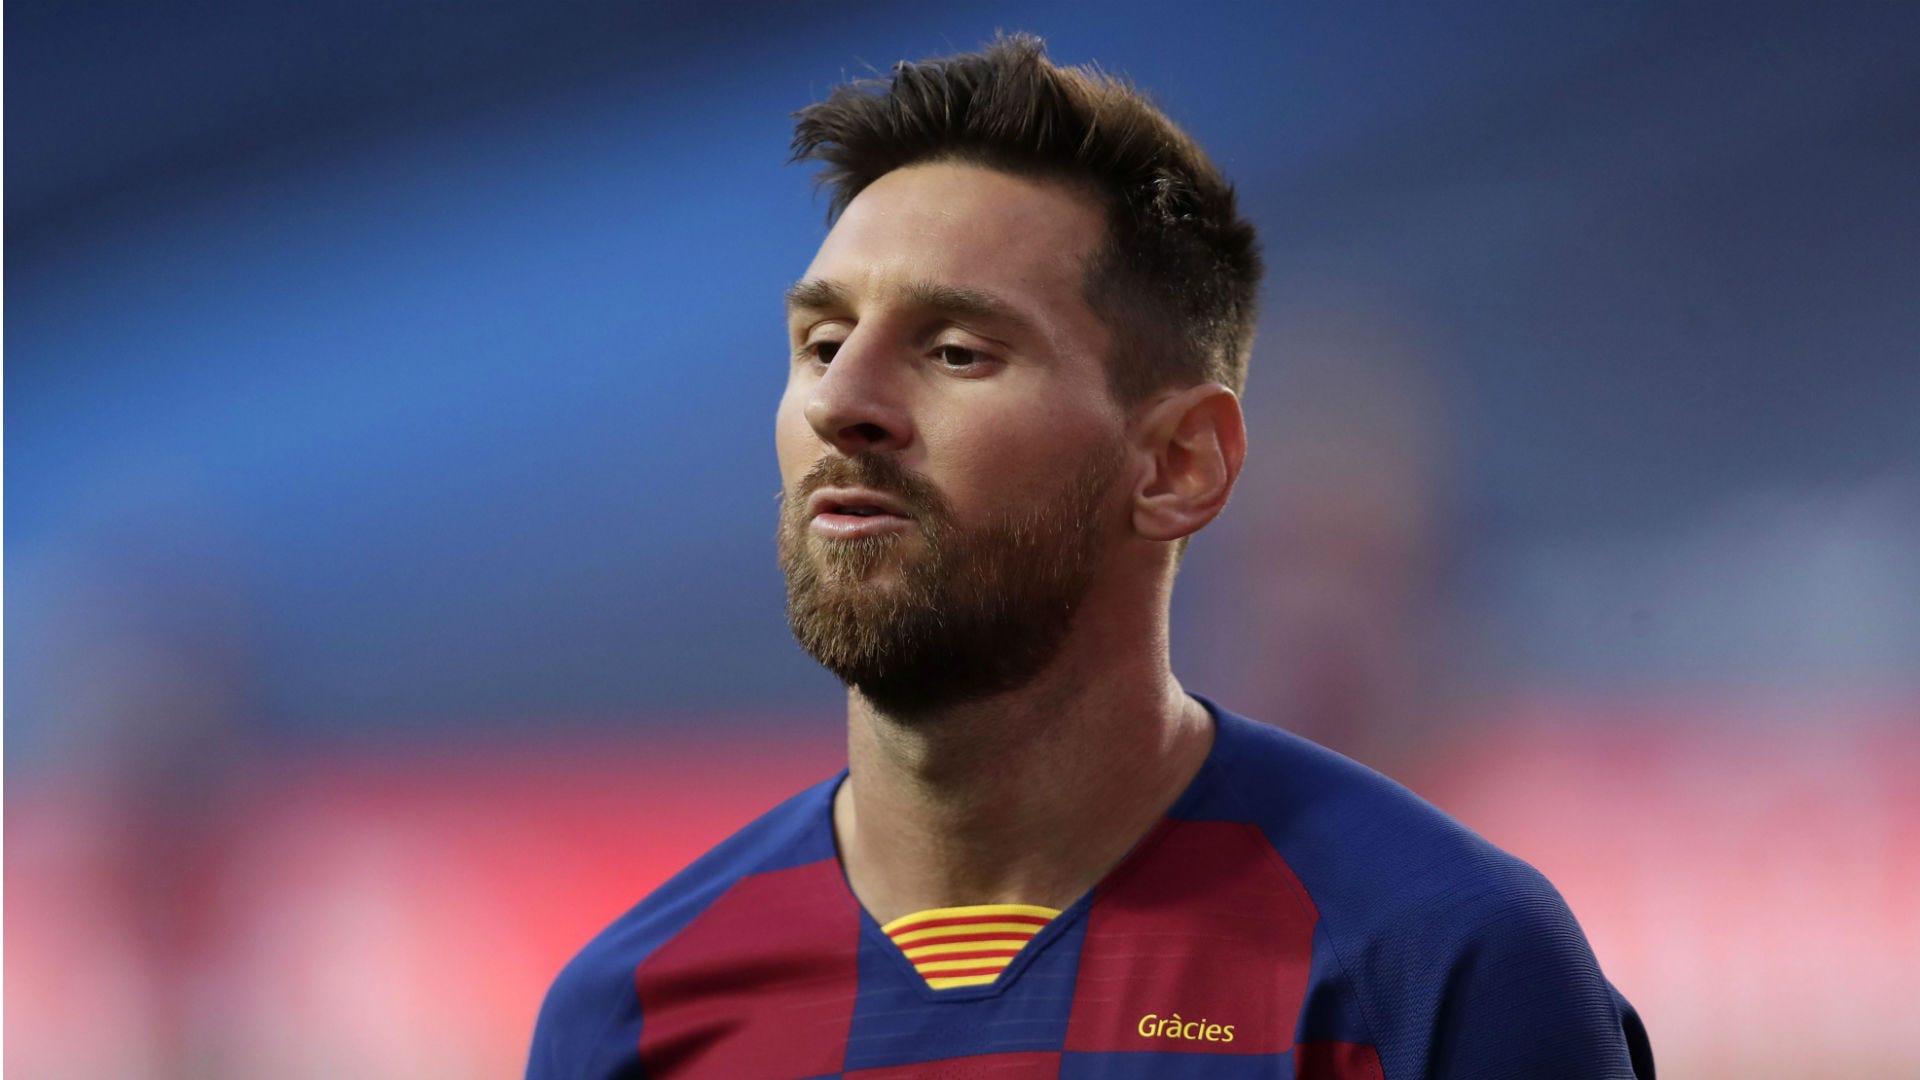 Hình ảnh của Messi trong quá trình tập luyện tại Barca đang trở thành một chủ đề thú vị và hấp dẫn với cả những người hâm mộ bóng đá lẫn những tín đồ của phong cách sống khỏe mạnh. Cùng chiêm ngưỡng những pha tập luyện khắc nghiệt nhưng đầy ý nghĩa của ngôi sao Argentina này.